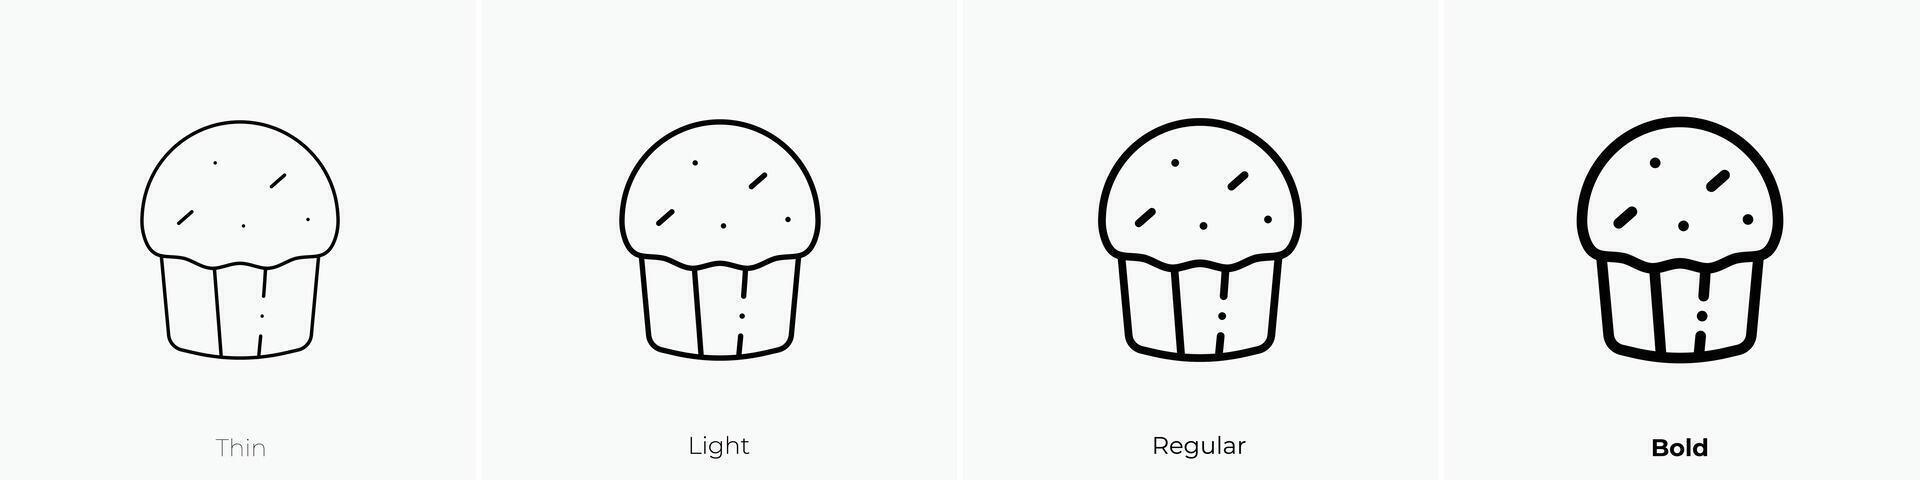 muffin ikon. tunn, ljus, regelbunden och djärv stil design isolerat på vit bakgrund vektor